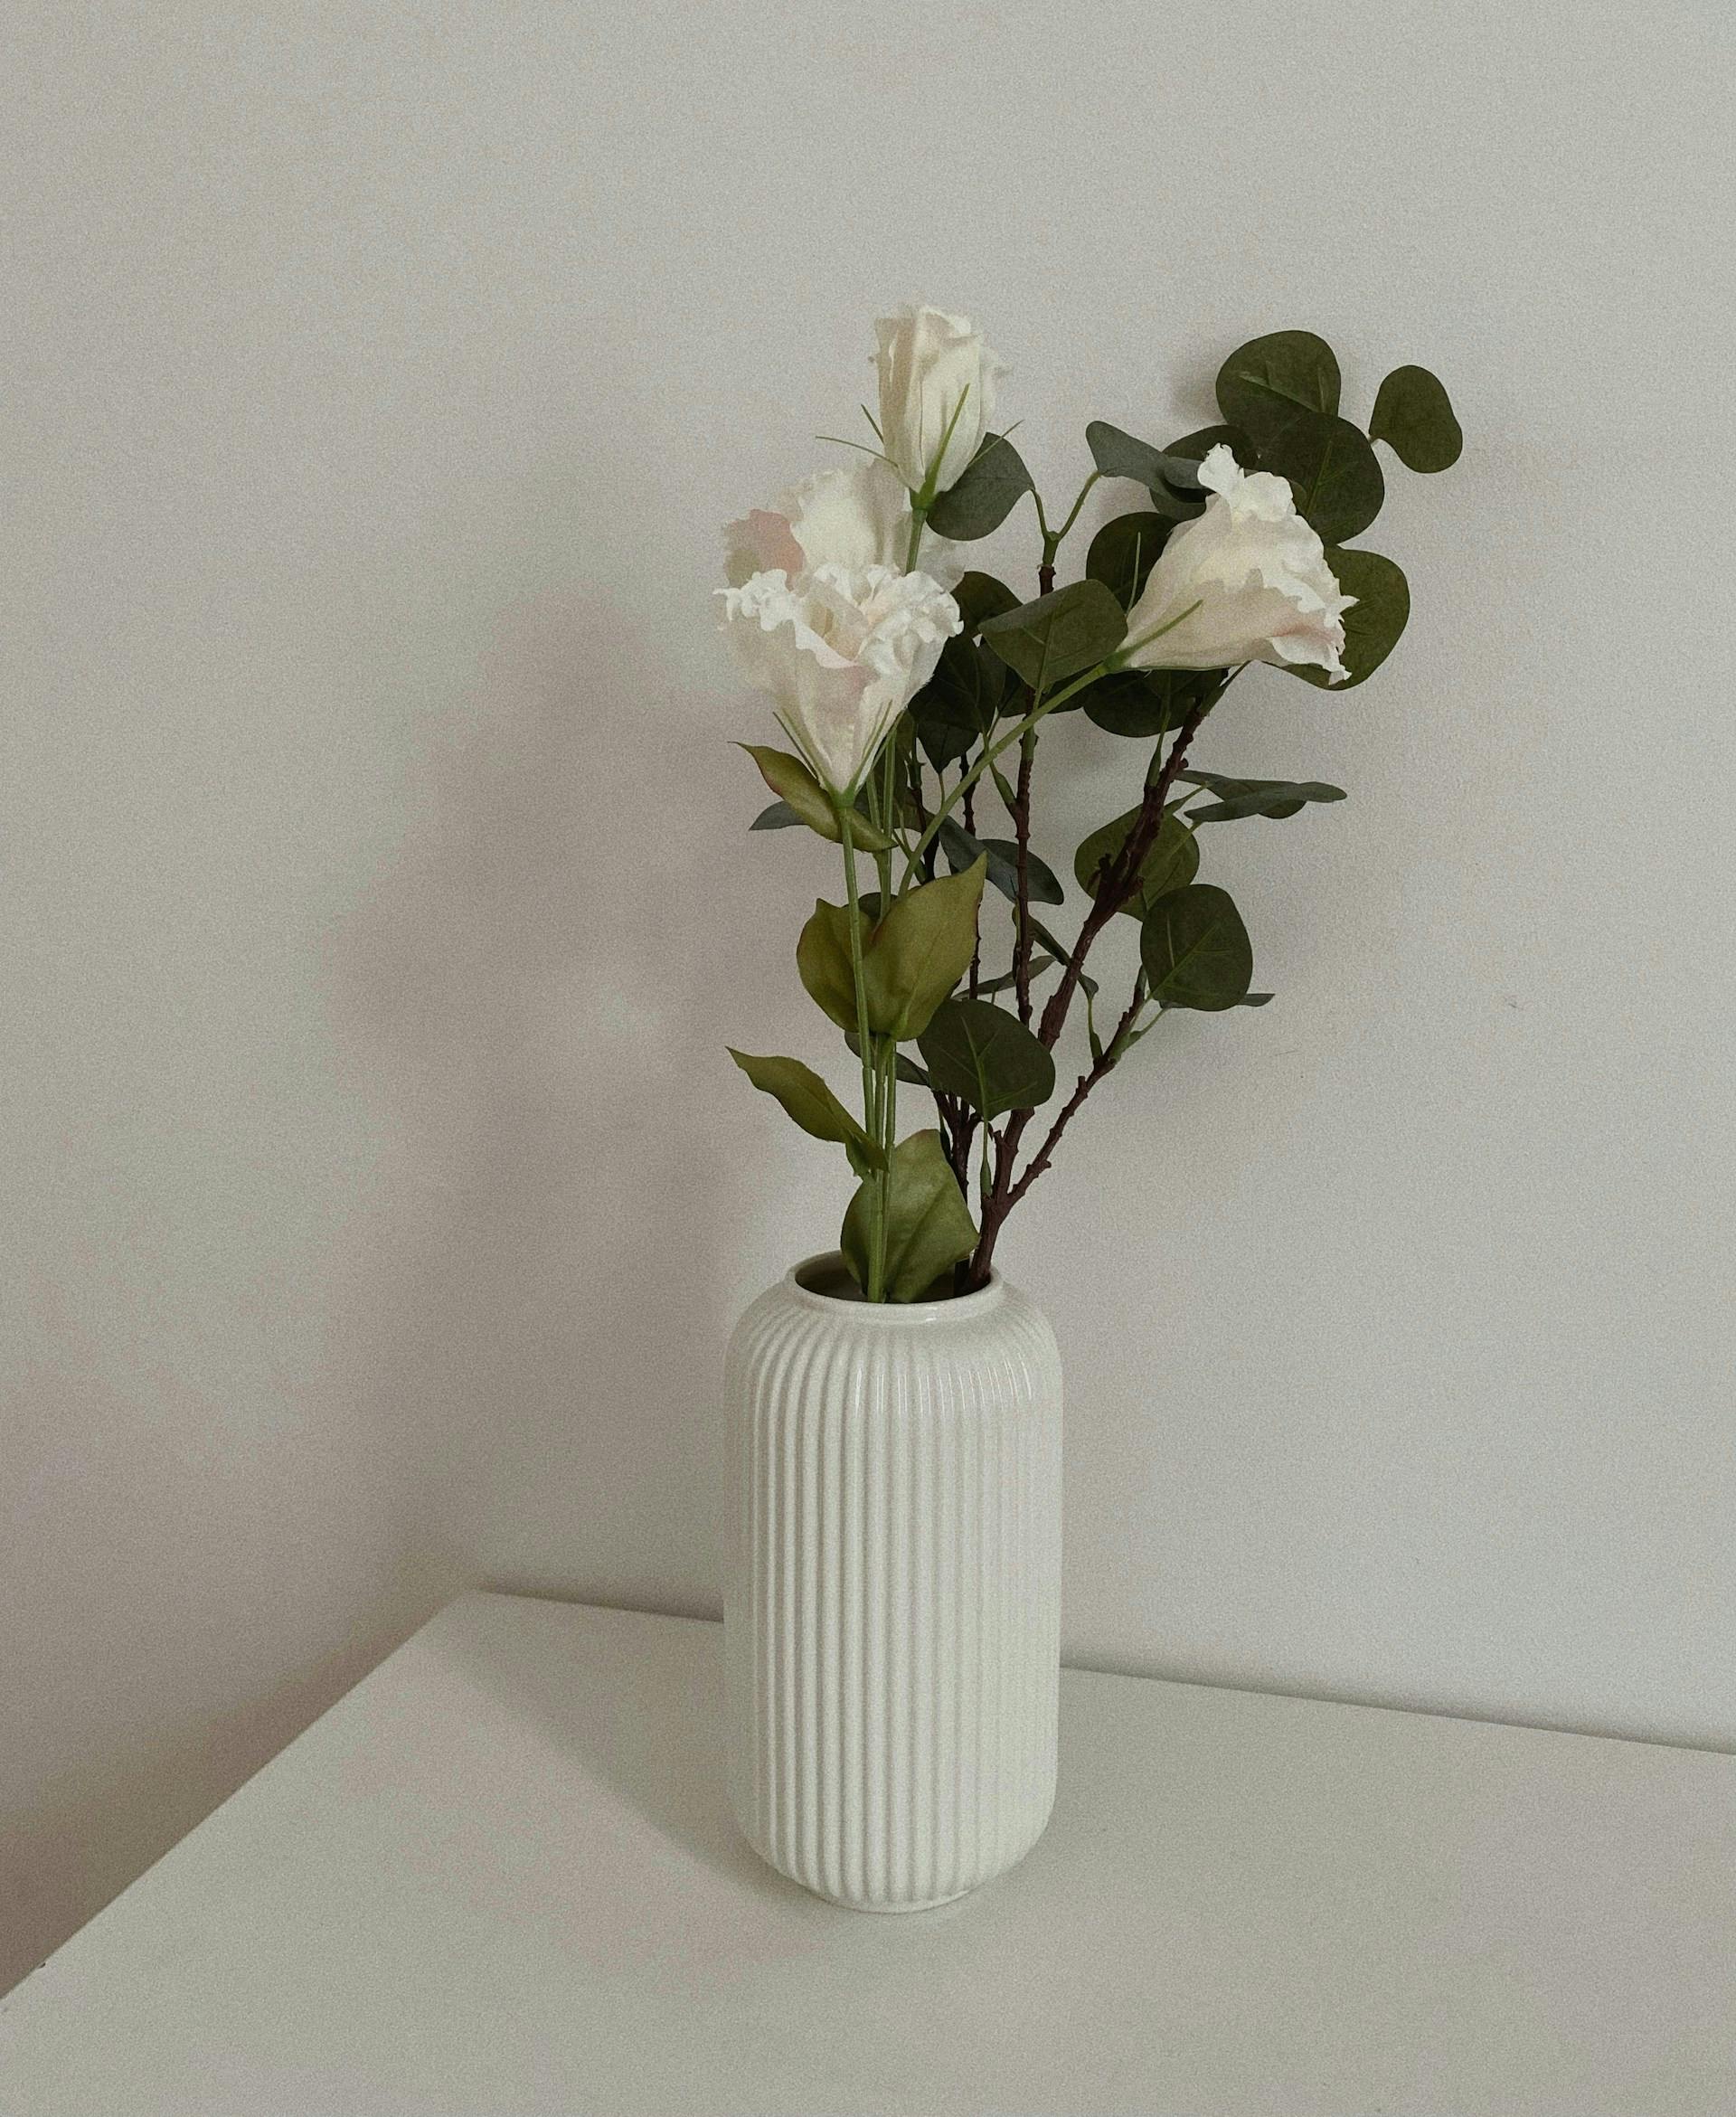 Blumen stehen in einer weißen Blumenvase